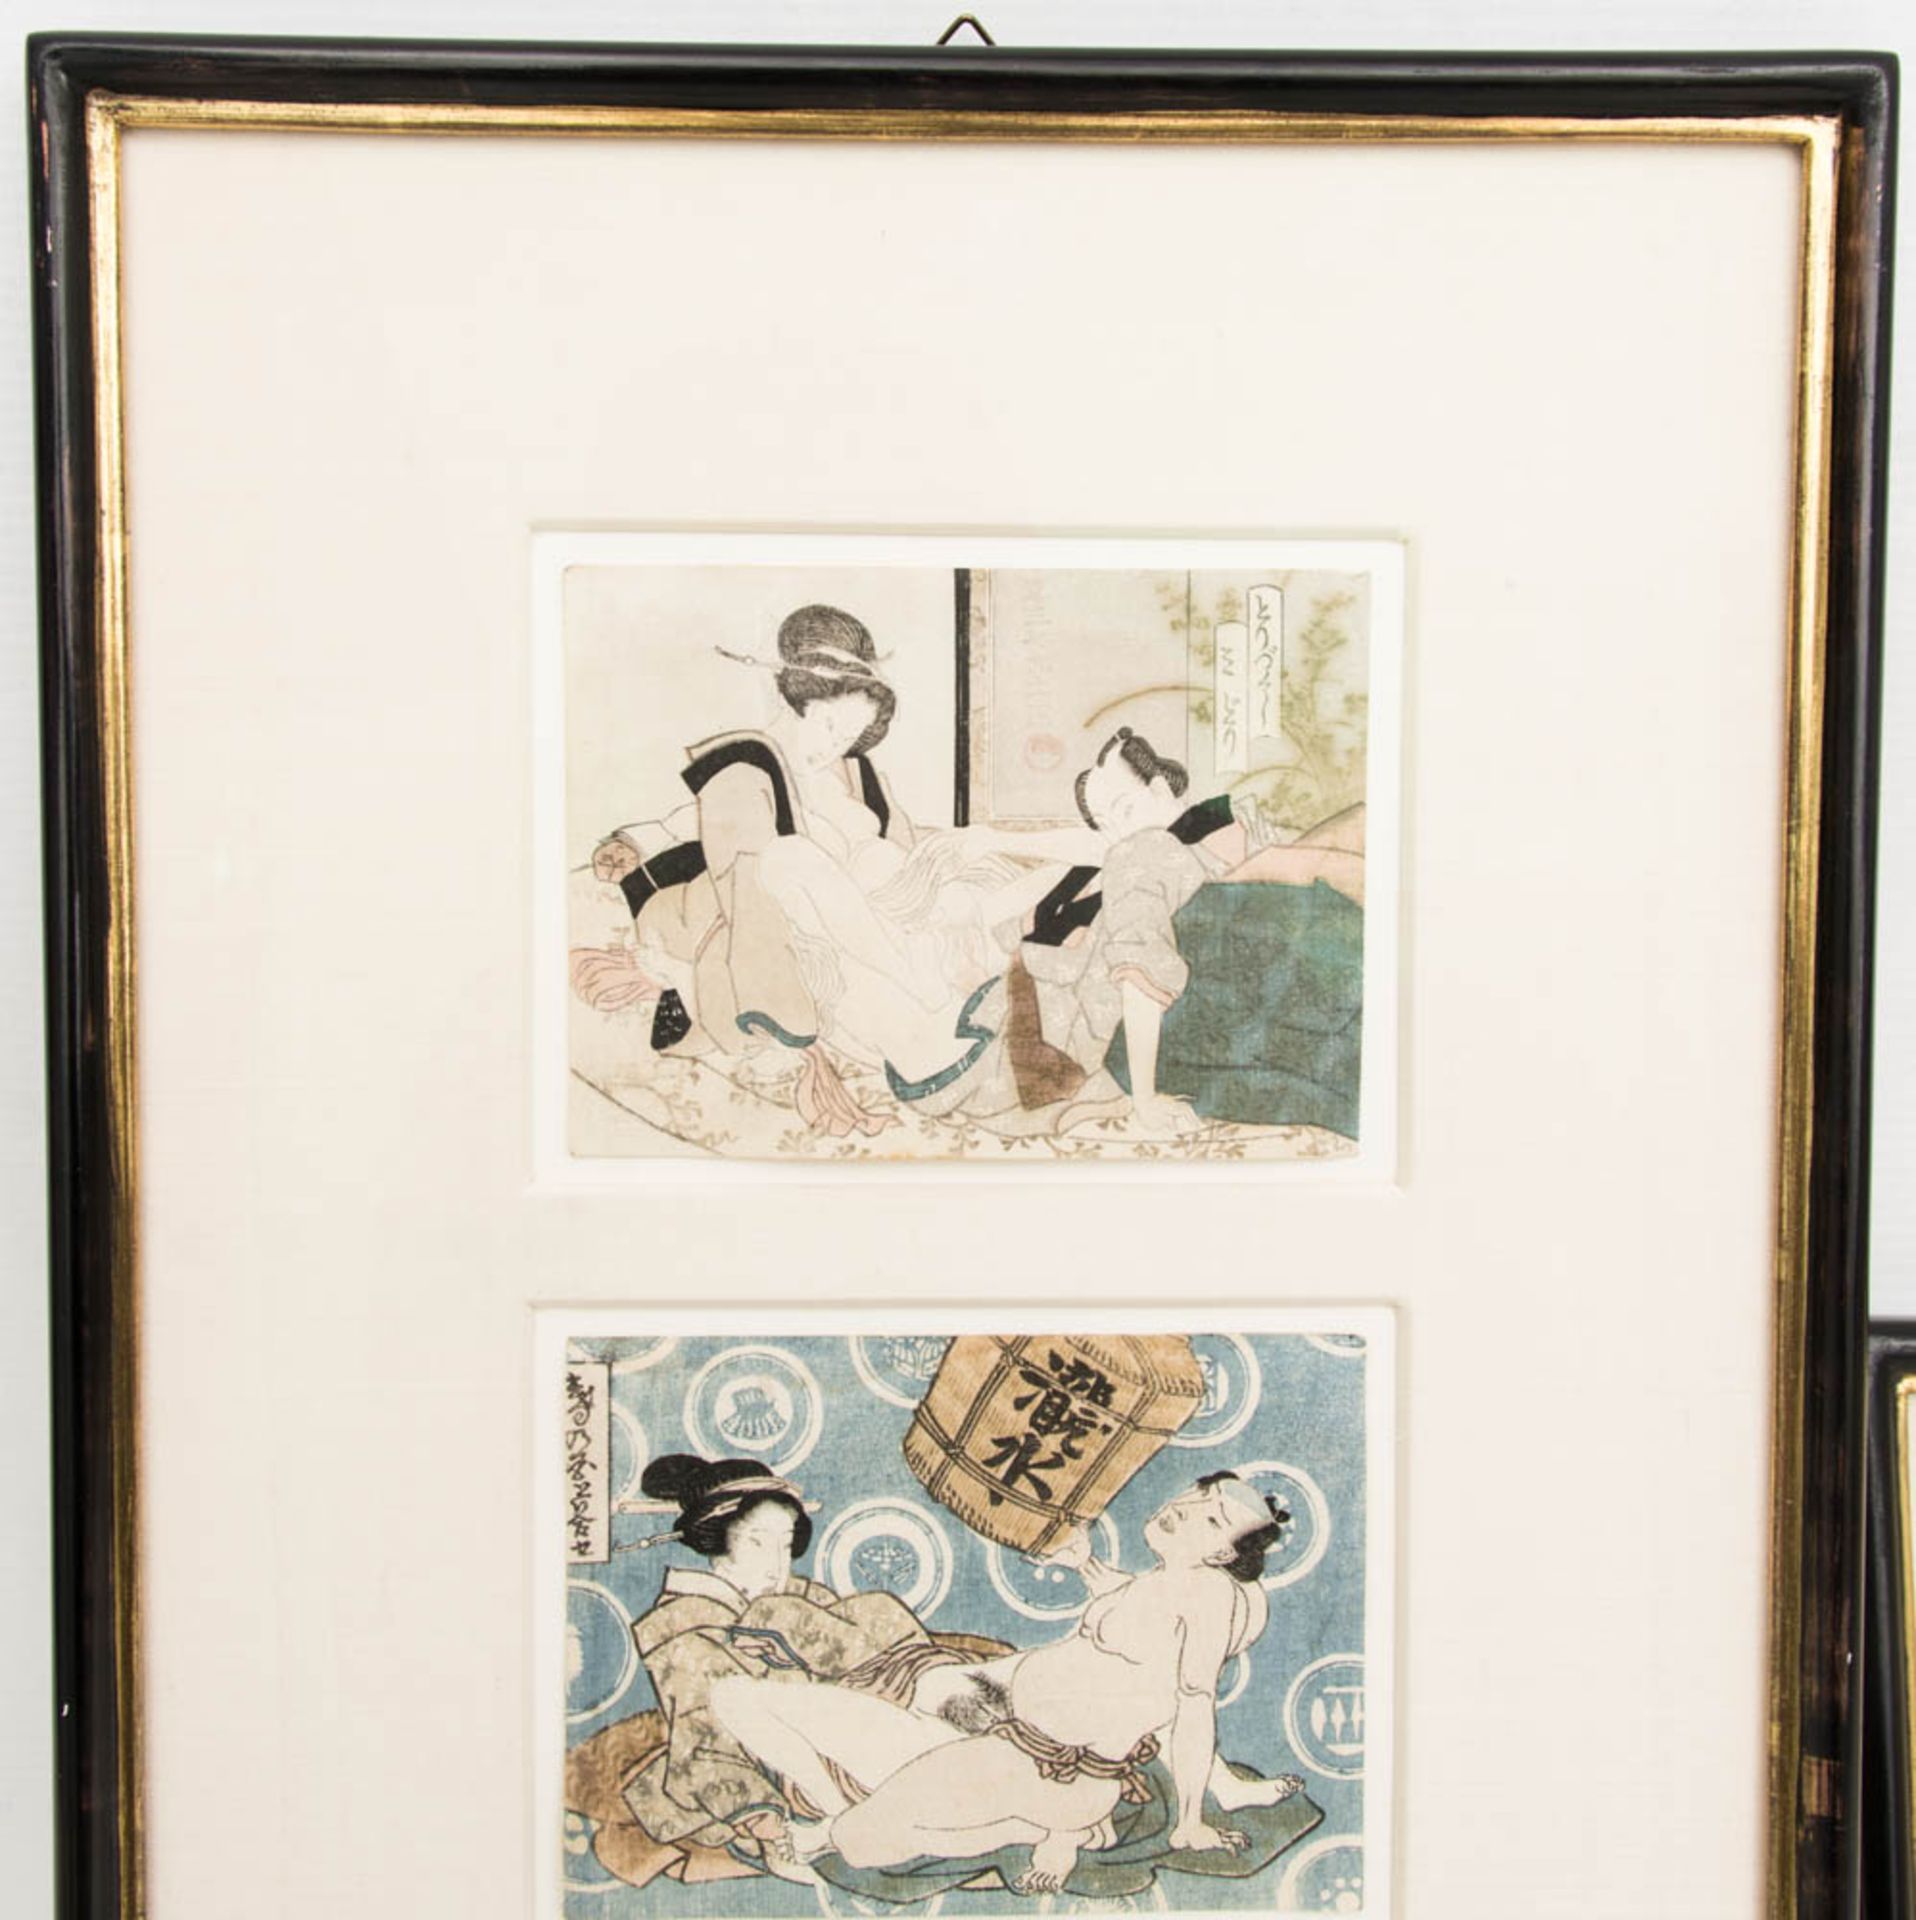 Fünf japanische Frühlingsblätter, erotische Darstellungen, Farbholzschnitte, um Mitte 19. Jh. - Bild 2 aus 12